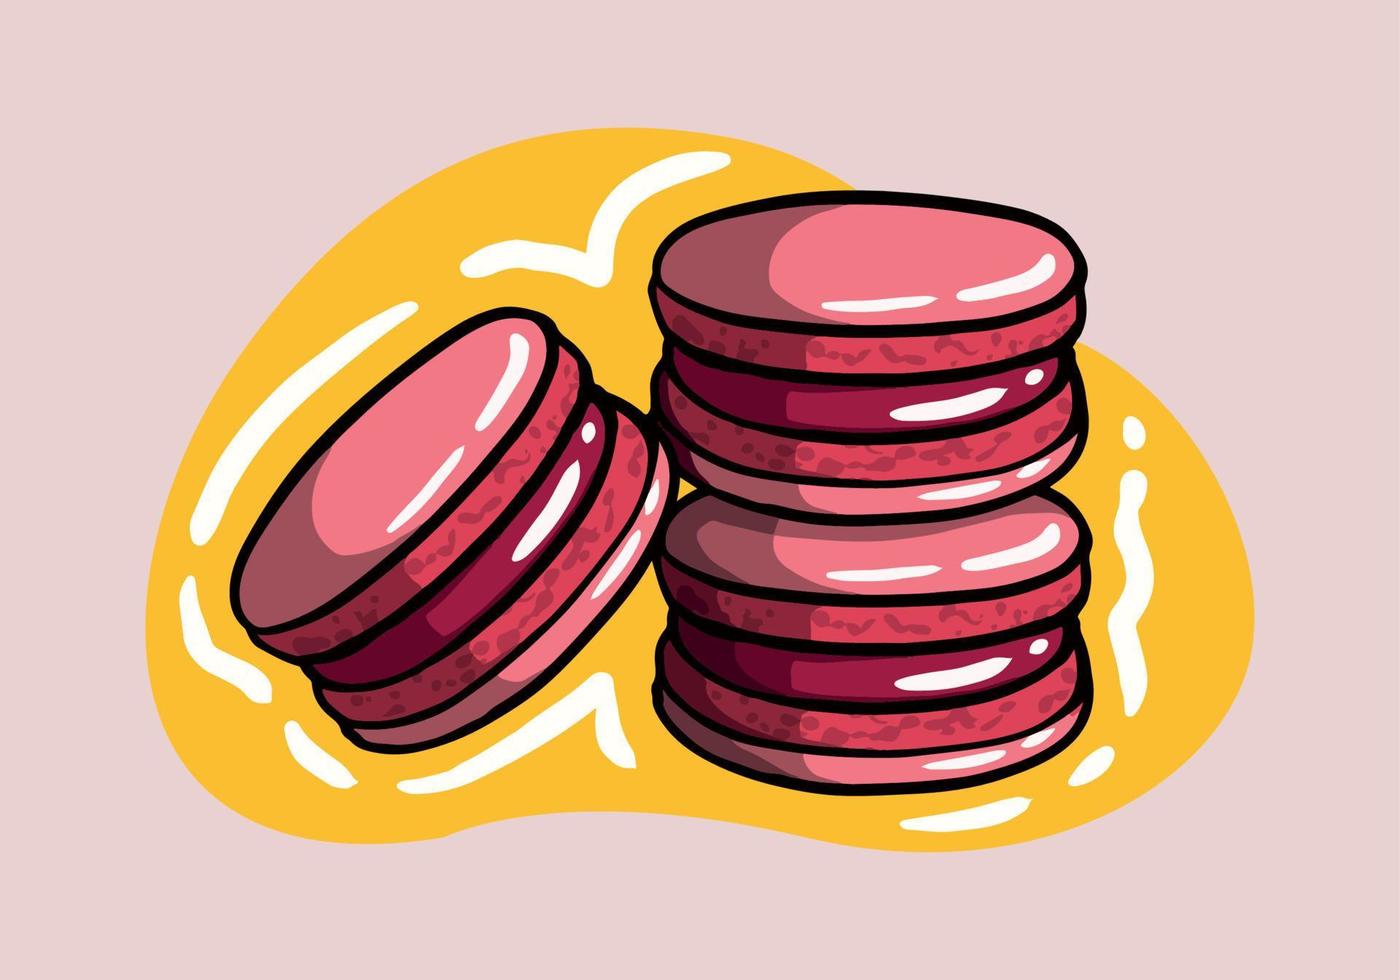 dibujos animados macaron galletas rosado maracron. tradicional francés dulce postre dibujo. linda mano dibujado vector ilustración.